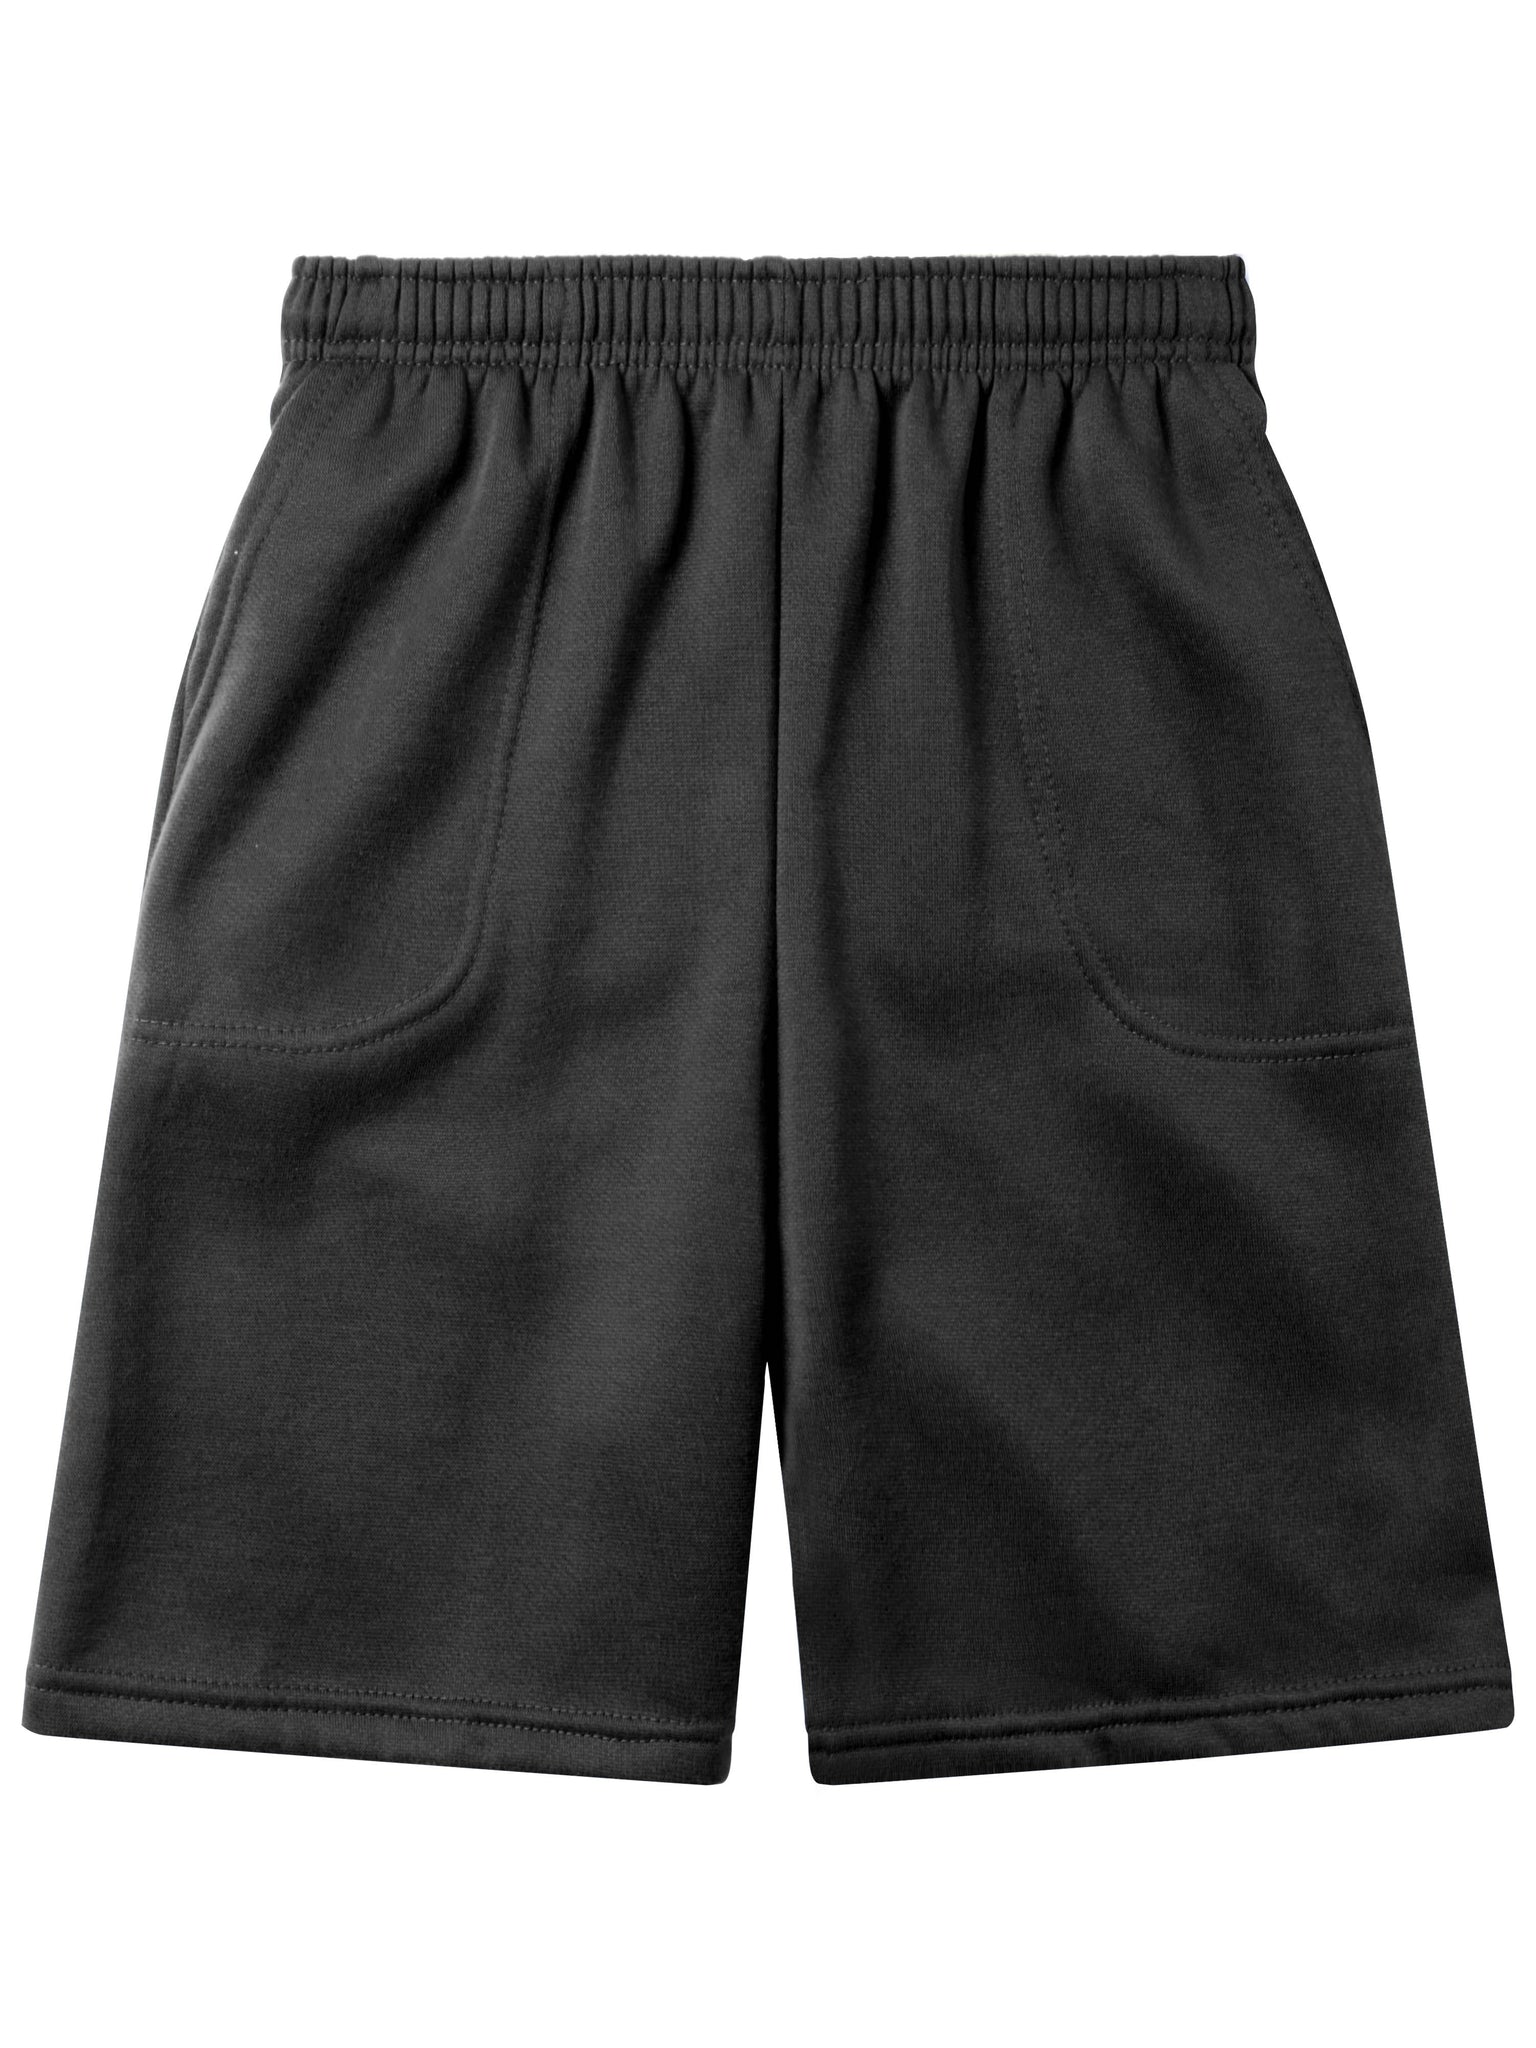 Hanes Mens Black Sweat Shorts Size Medium - beyond exchange